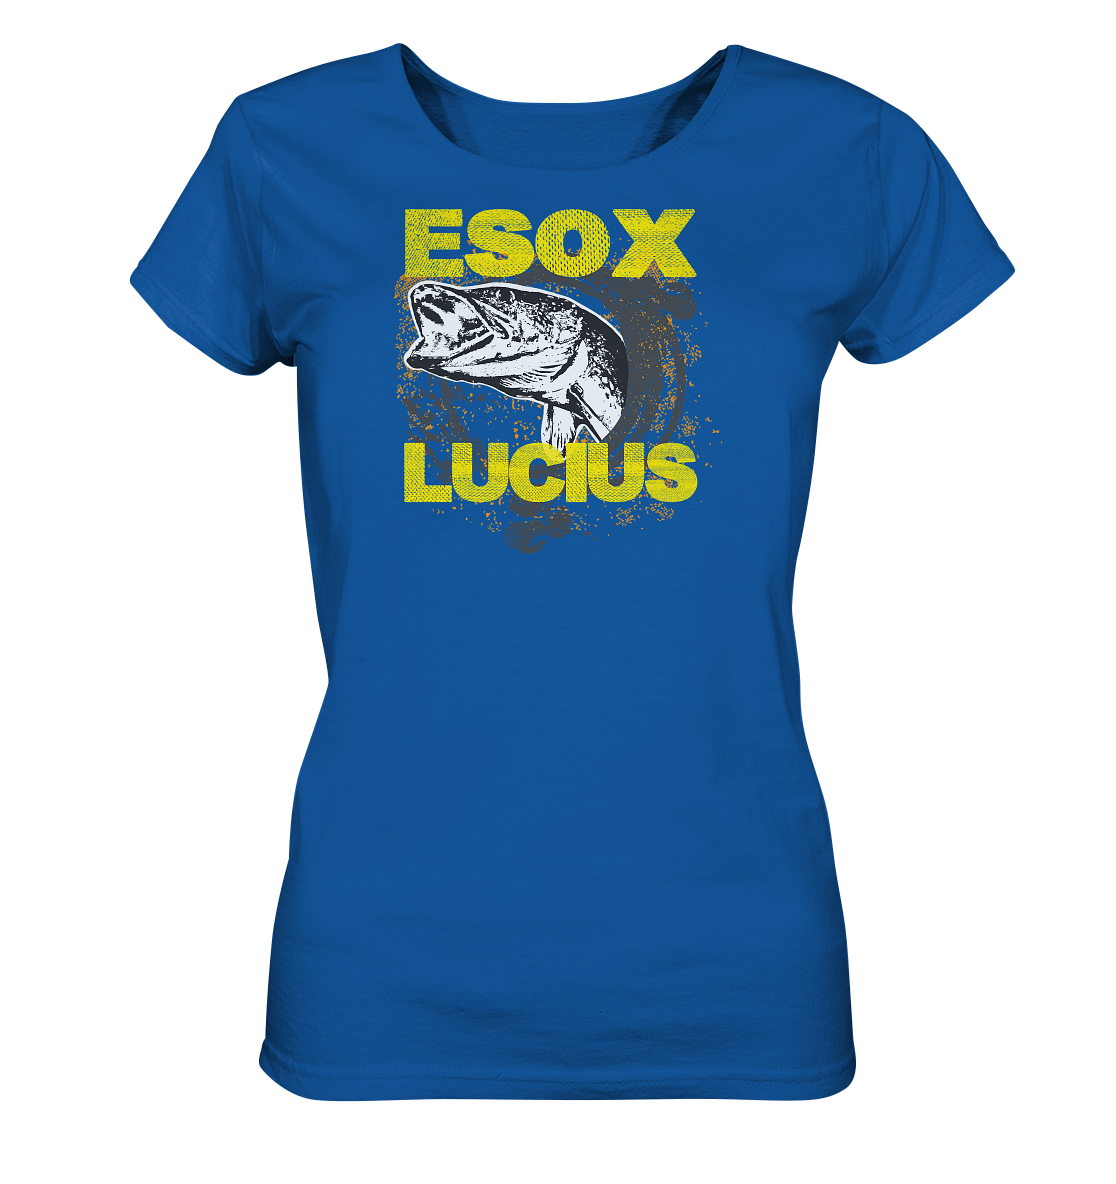 ESOX LUCIUS - Ladies